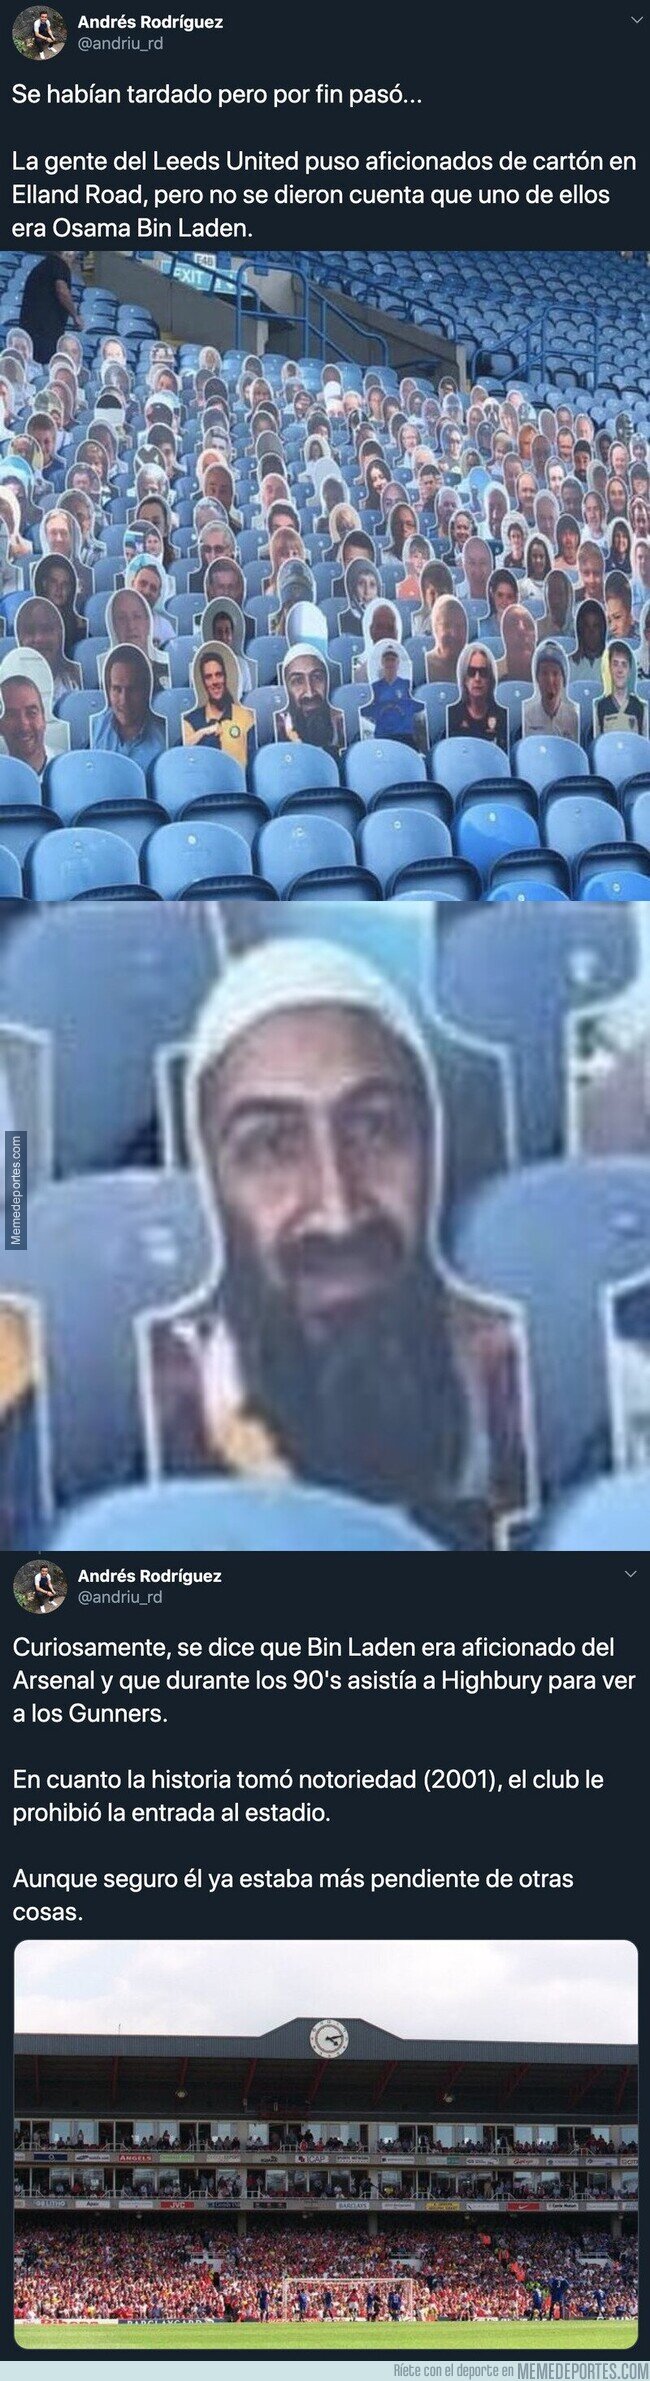 1107443 - Tremendo: han troleado de la forma más épica las gradas del Leeds metiendo una imagen de Bin Laden entre el público virtual